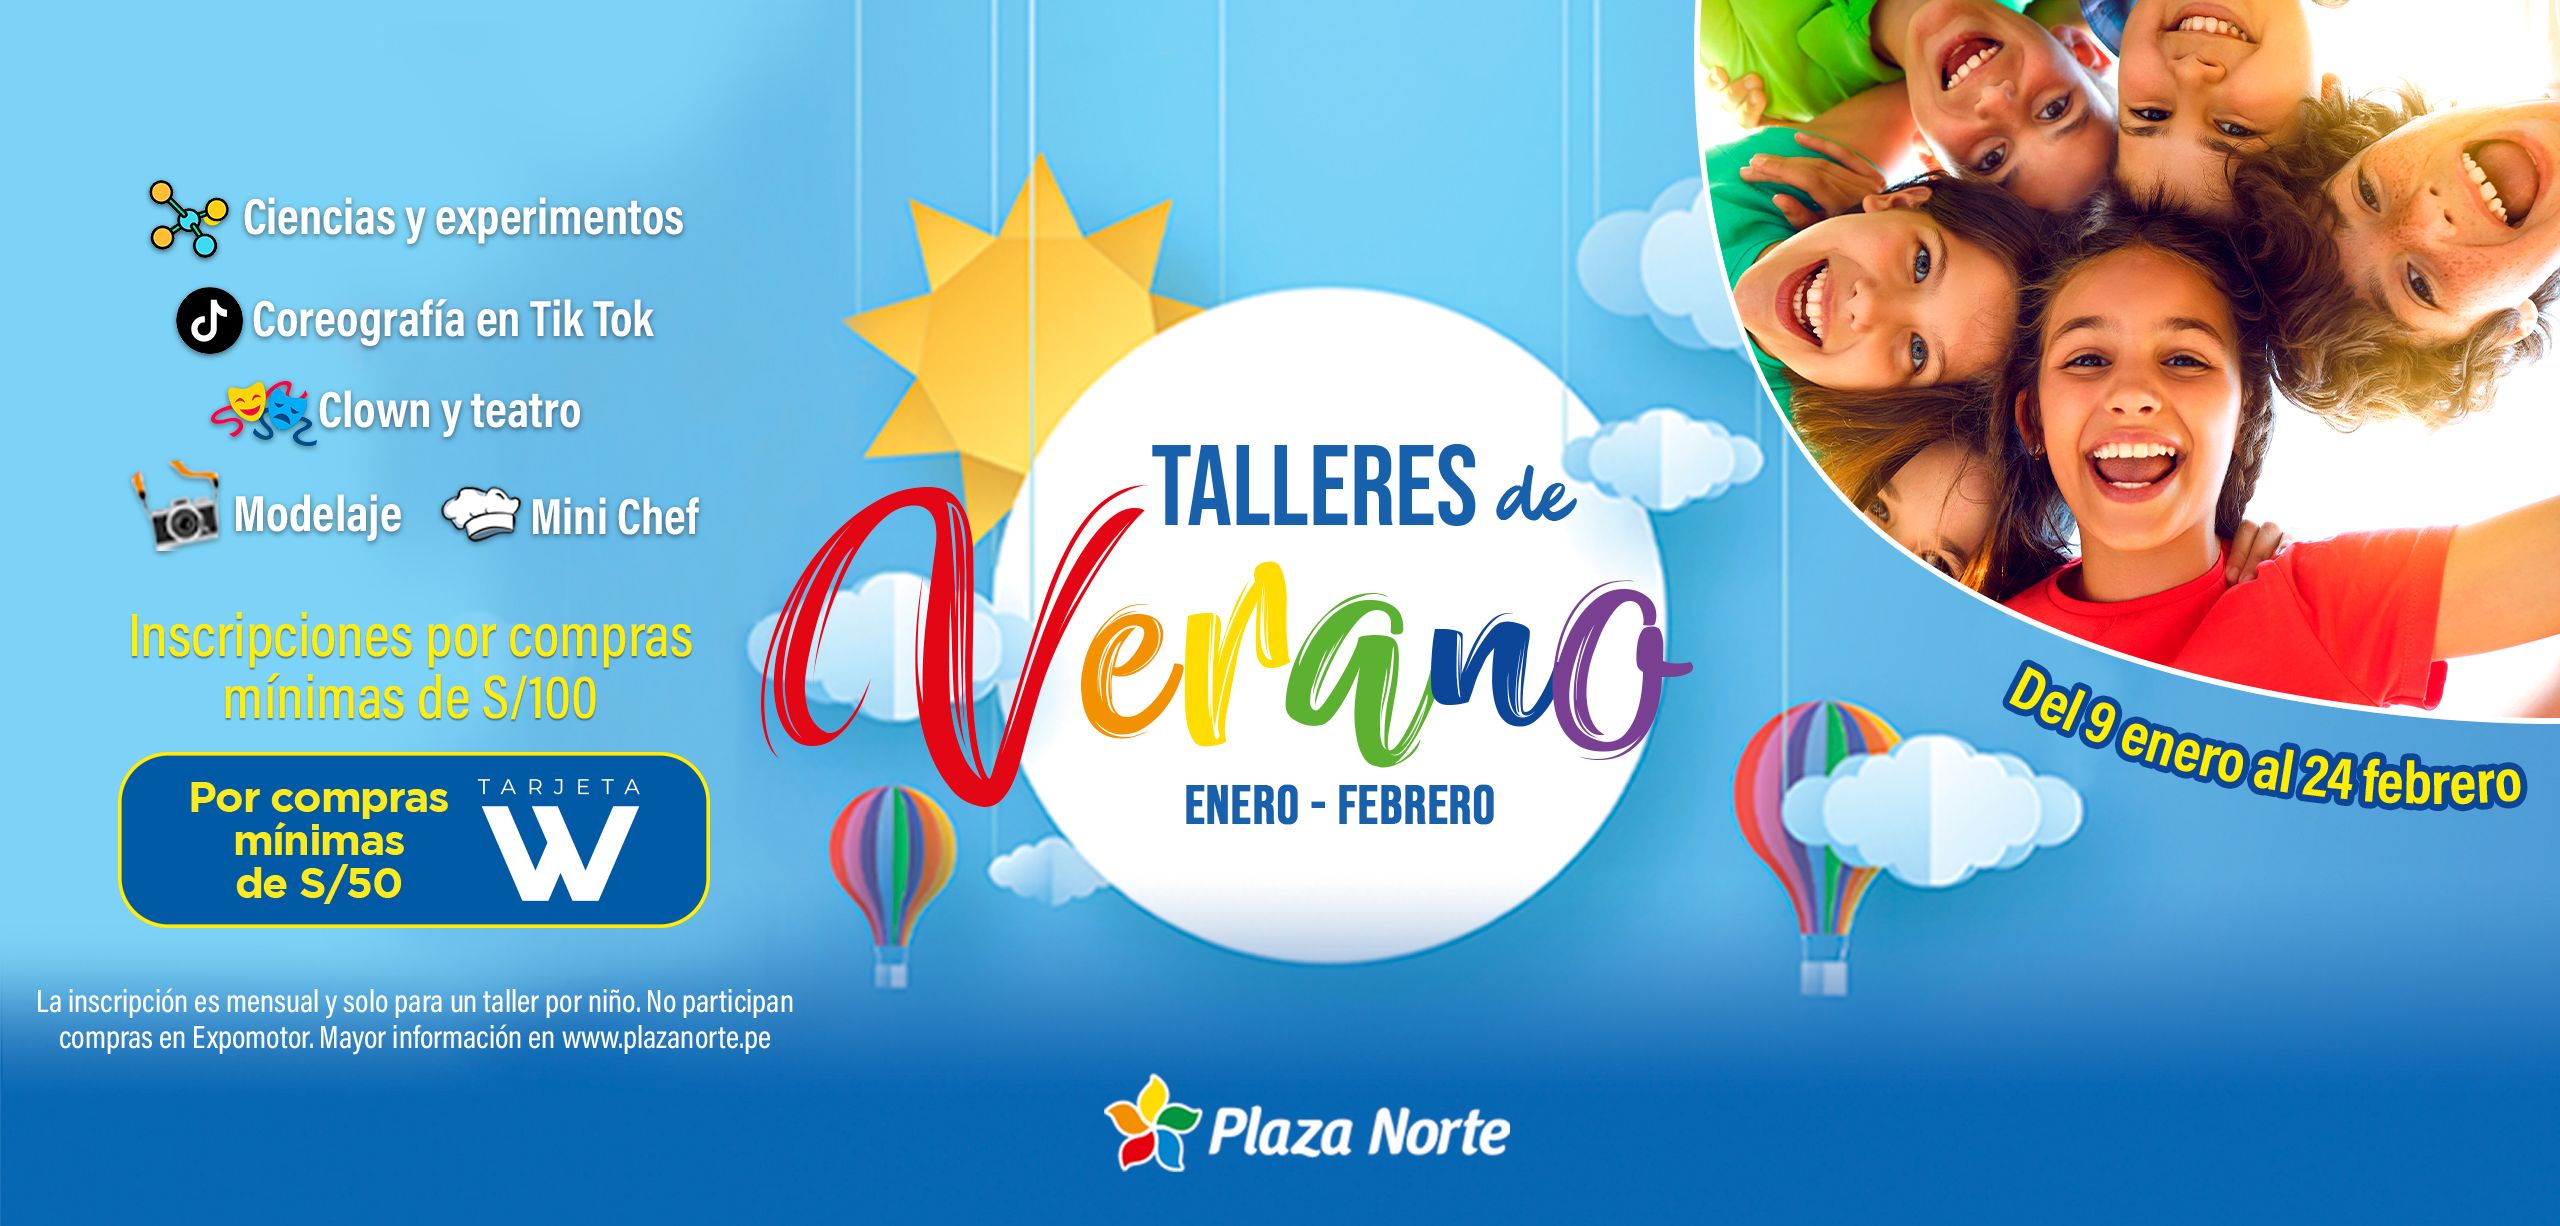 Talleres de Verano - Plaza Norte